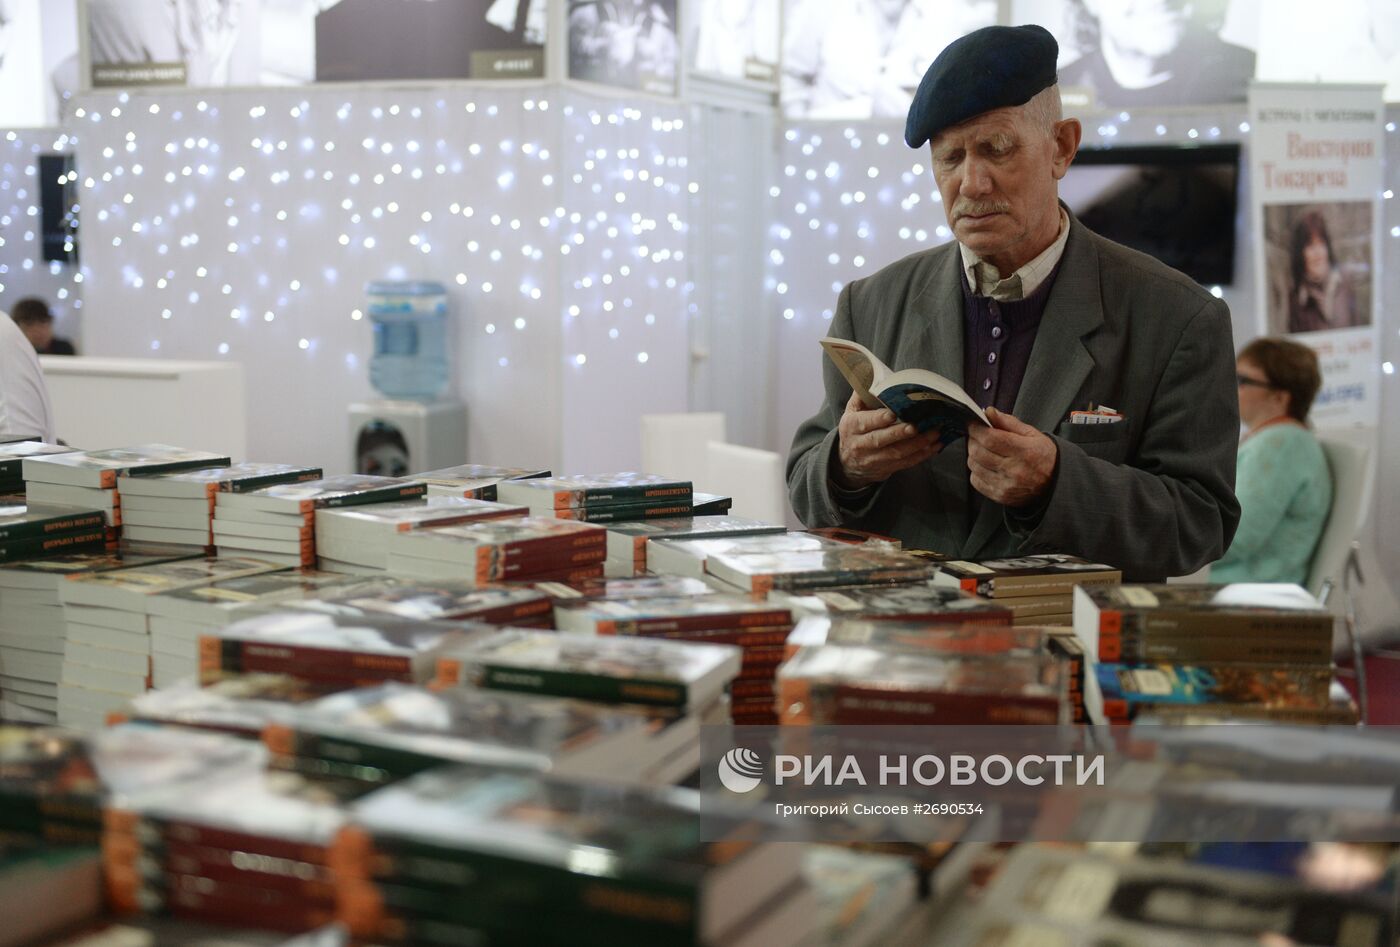 28-я Московская международная книжная выставка-ярмарка